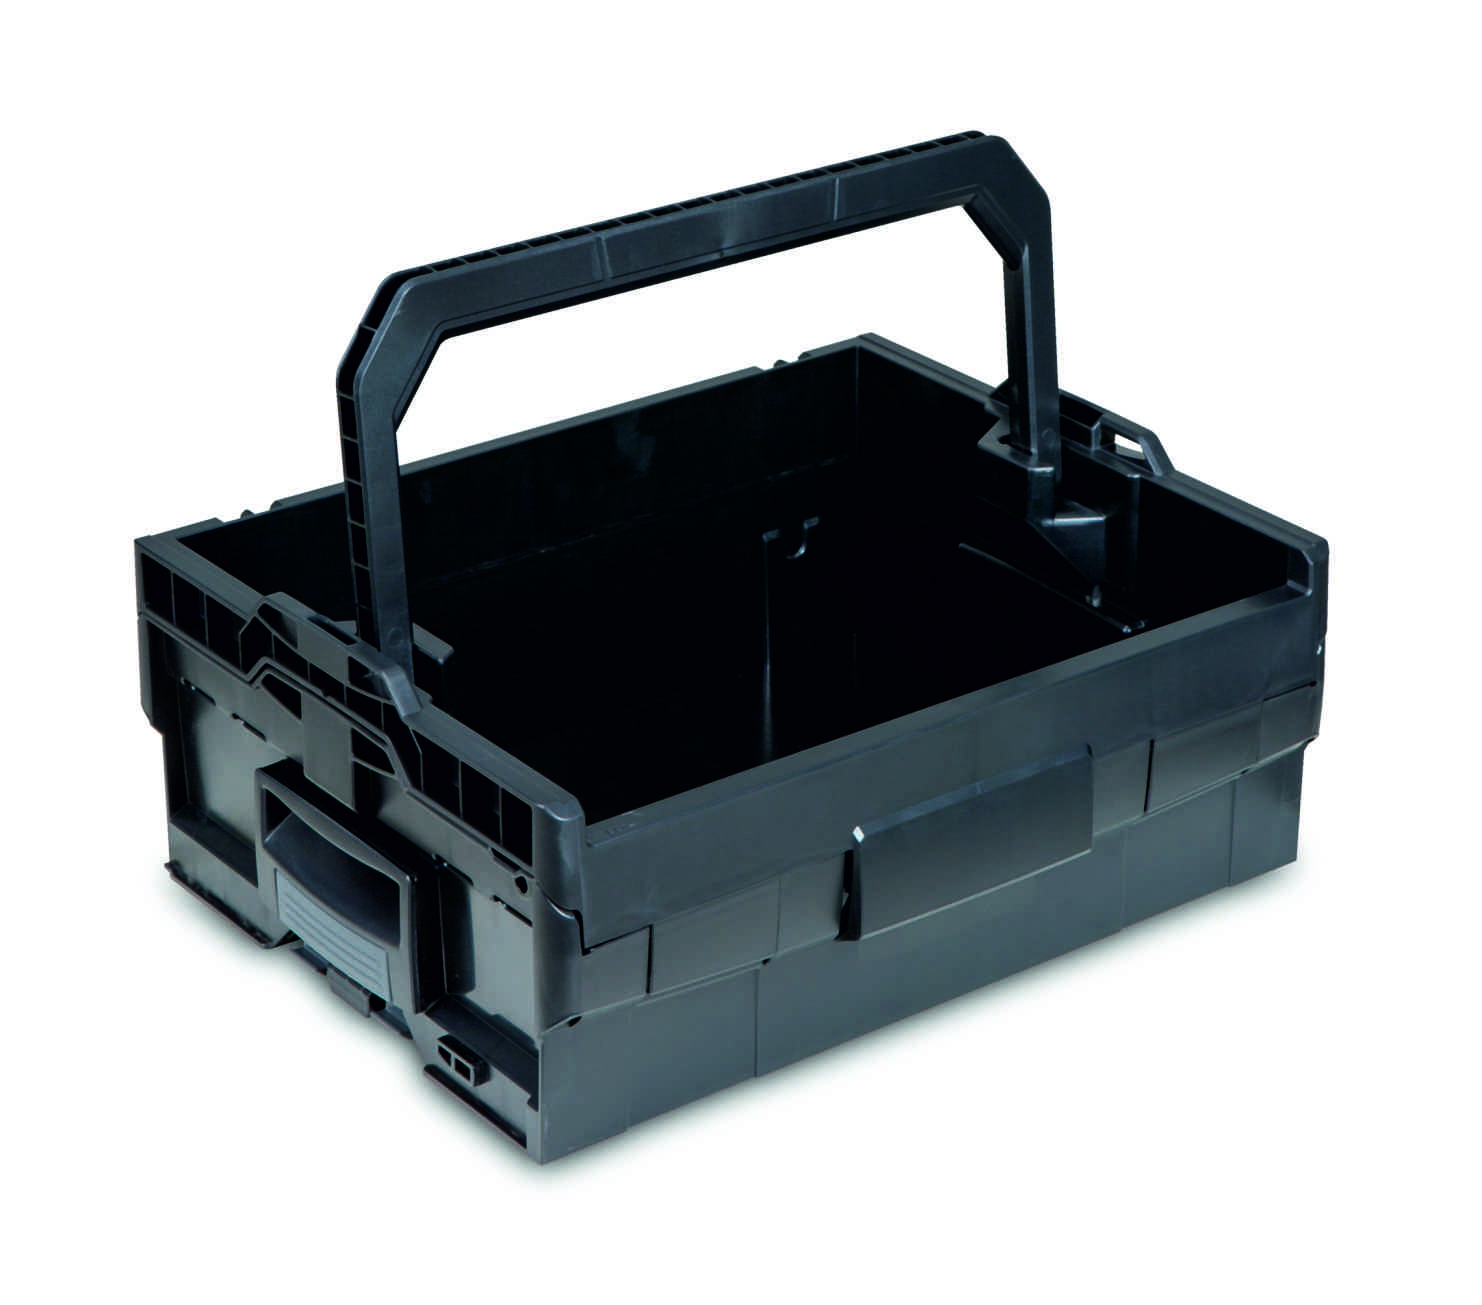 LT-BOXX 170 Werkzeugkiste mit invividueller Schaumstoffeinlage aus XPE35 grau-schwarz